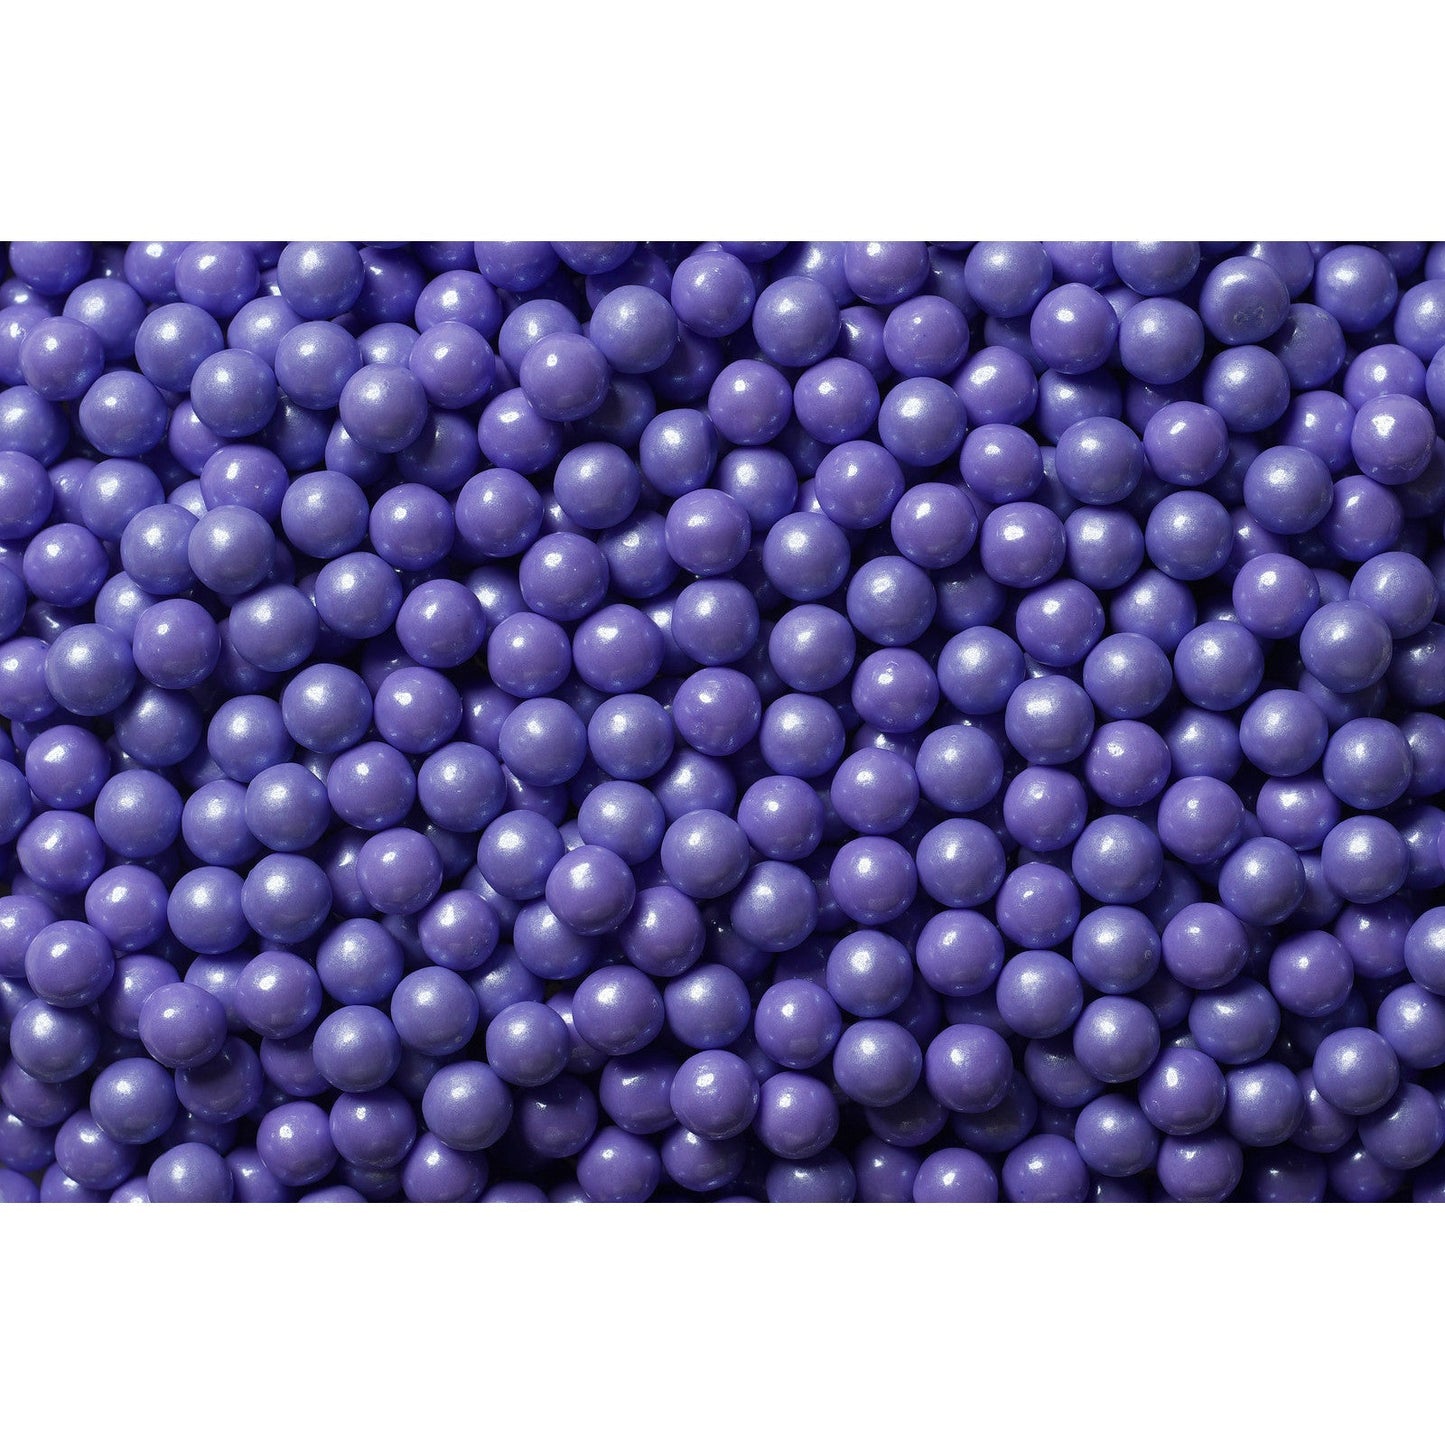 Shimmer Pearls Candies Lavender 2 lb. Bag